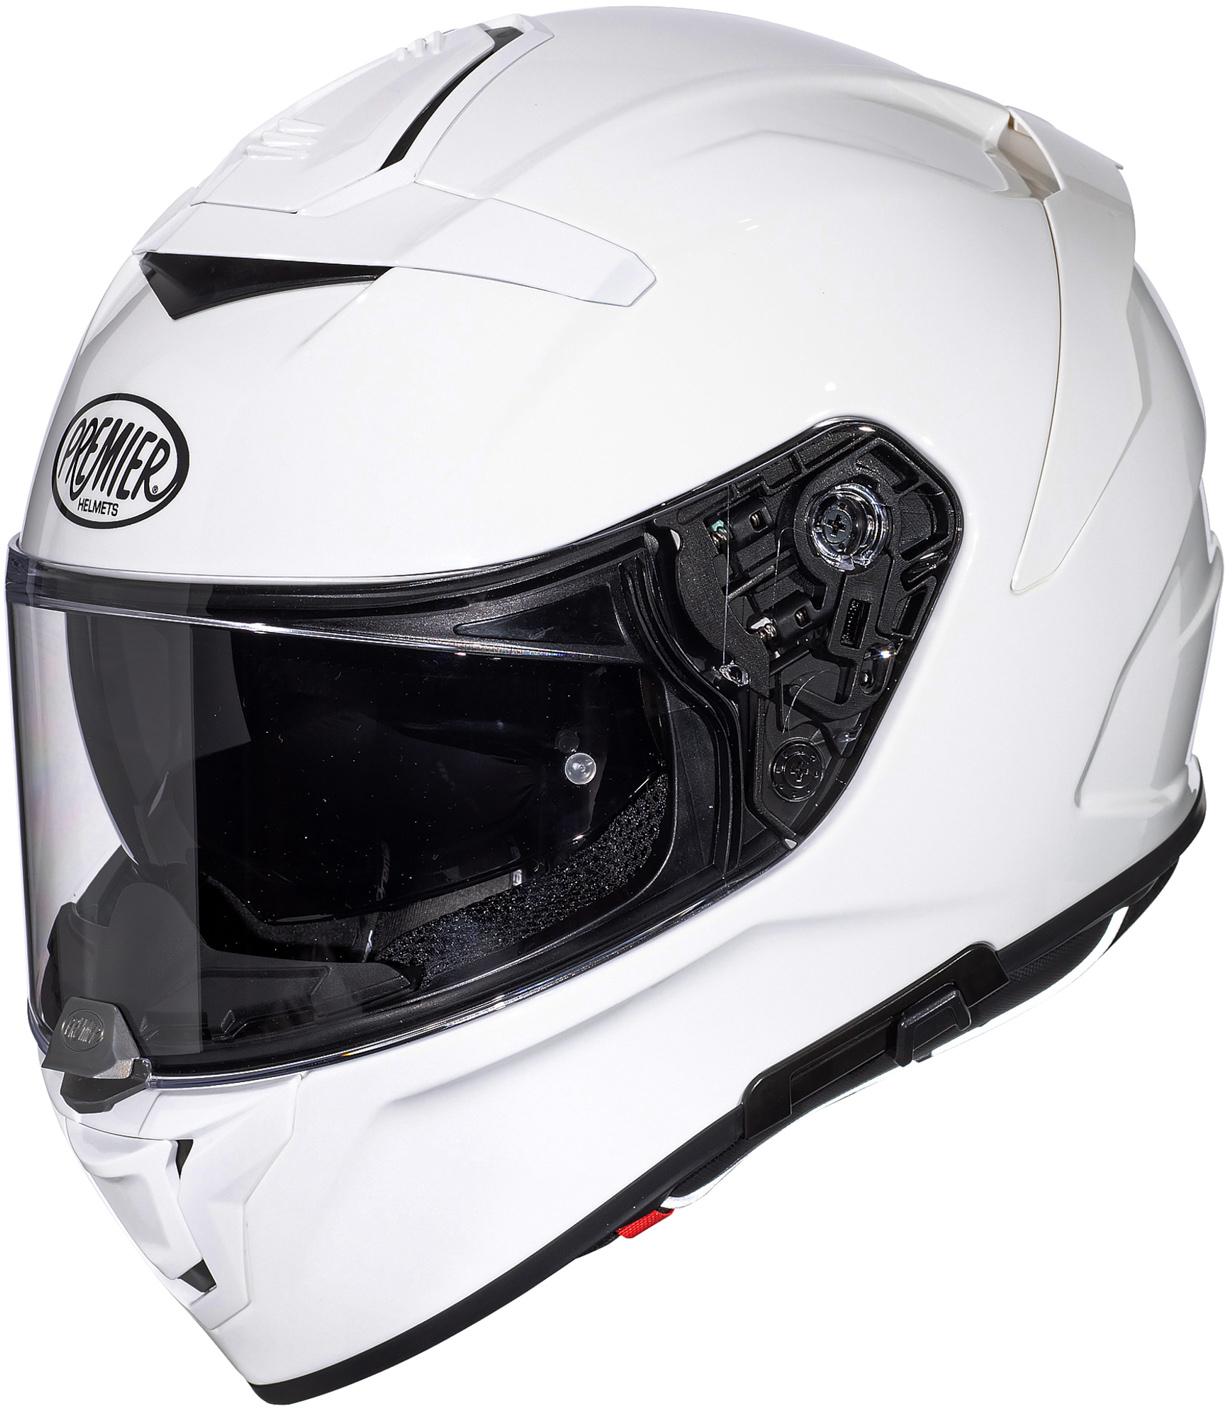 Premier Devil Full Face Motorcycle Helmet - White, L